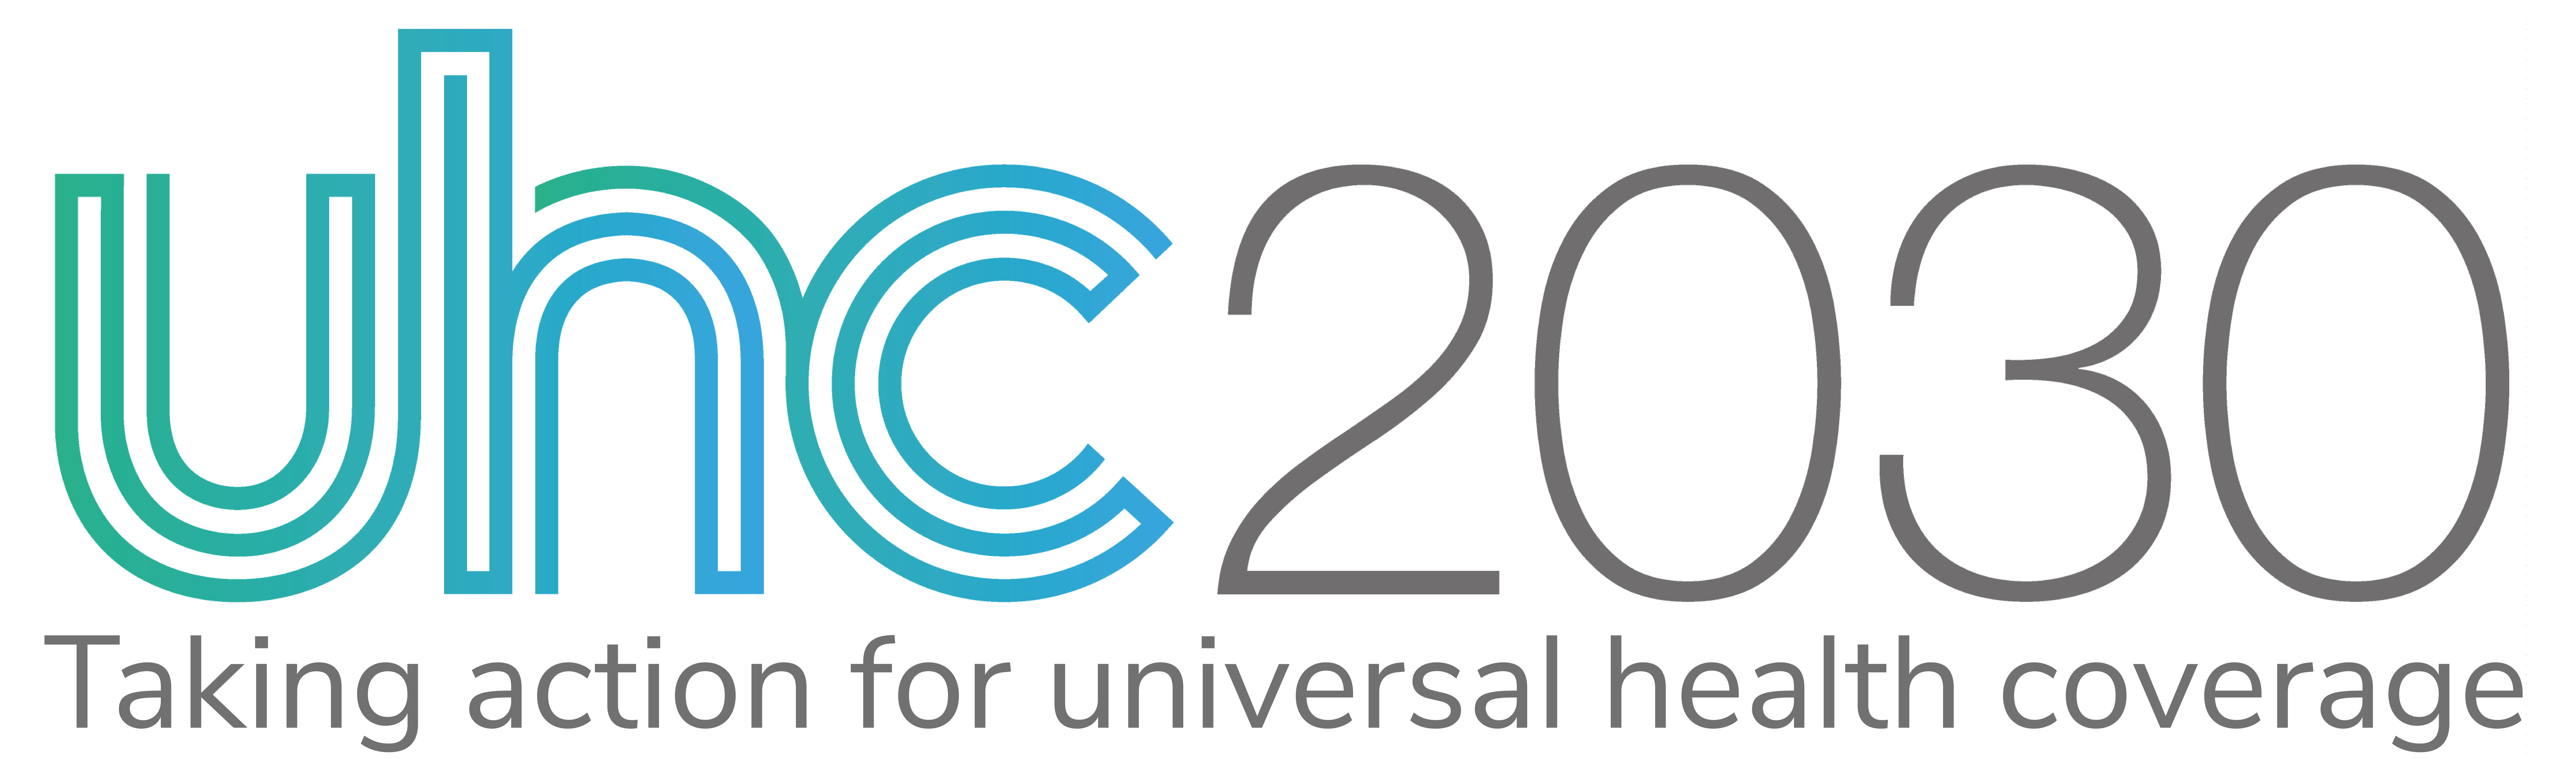 Annonce : L'UHC2030 lance un appel à candidatures pour de nouveaux coprésidents. 